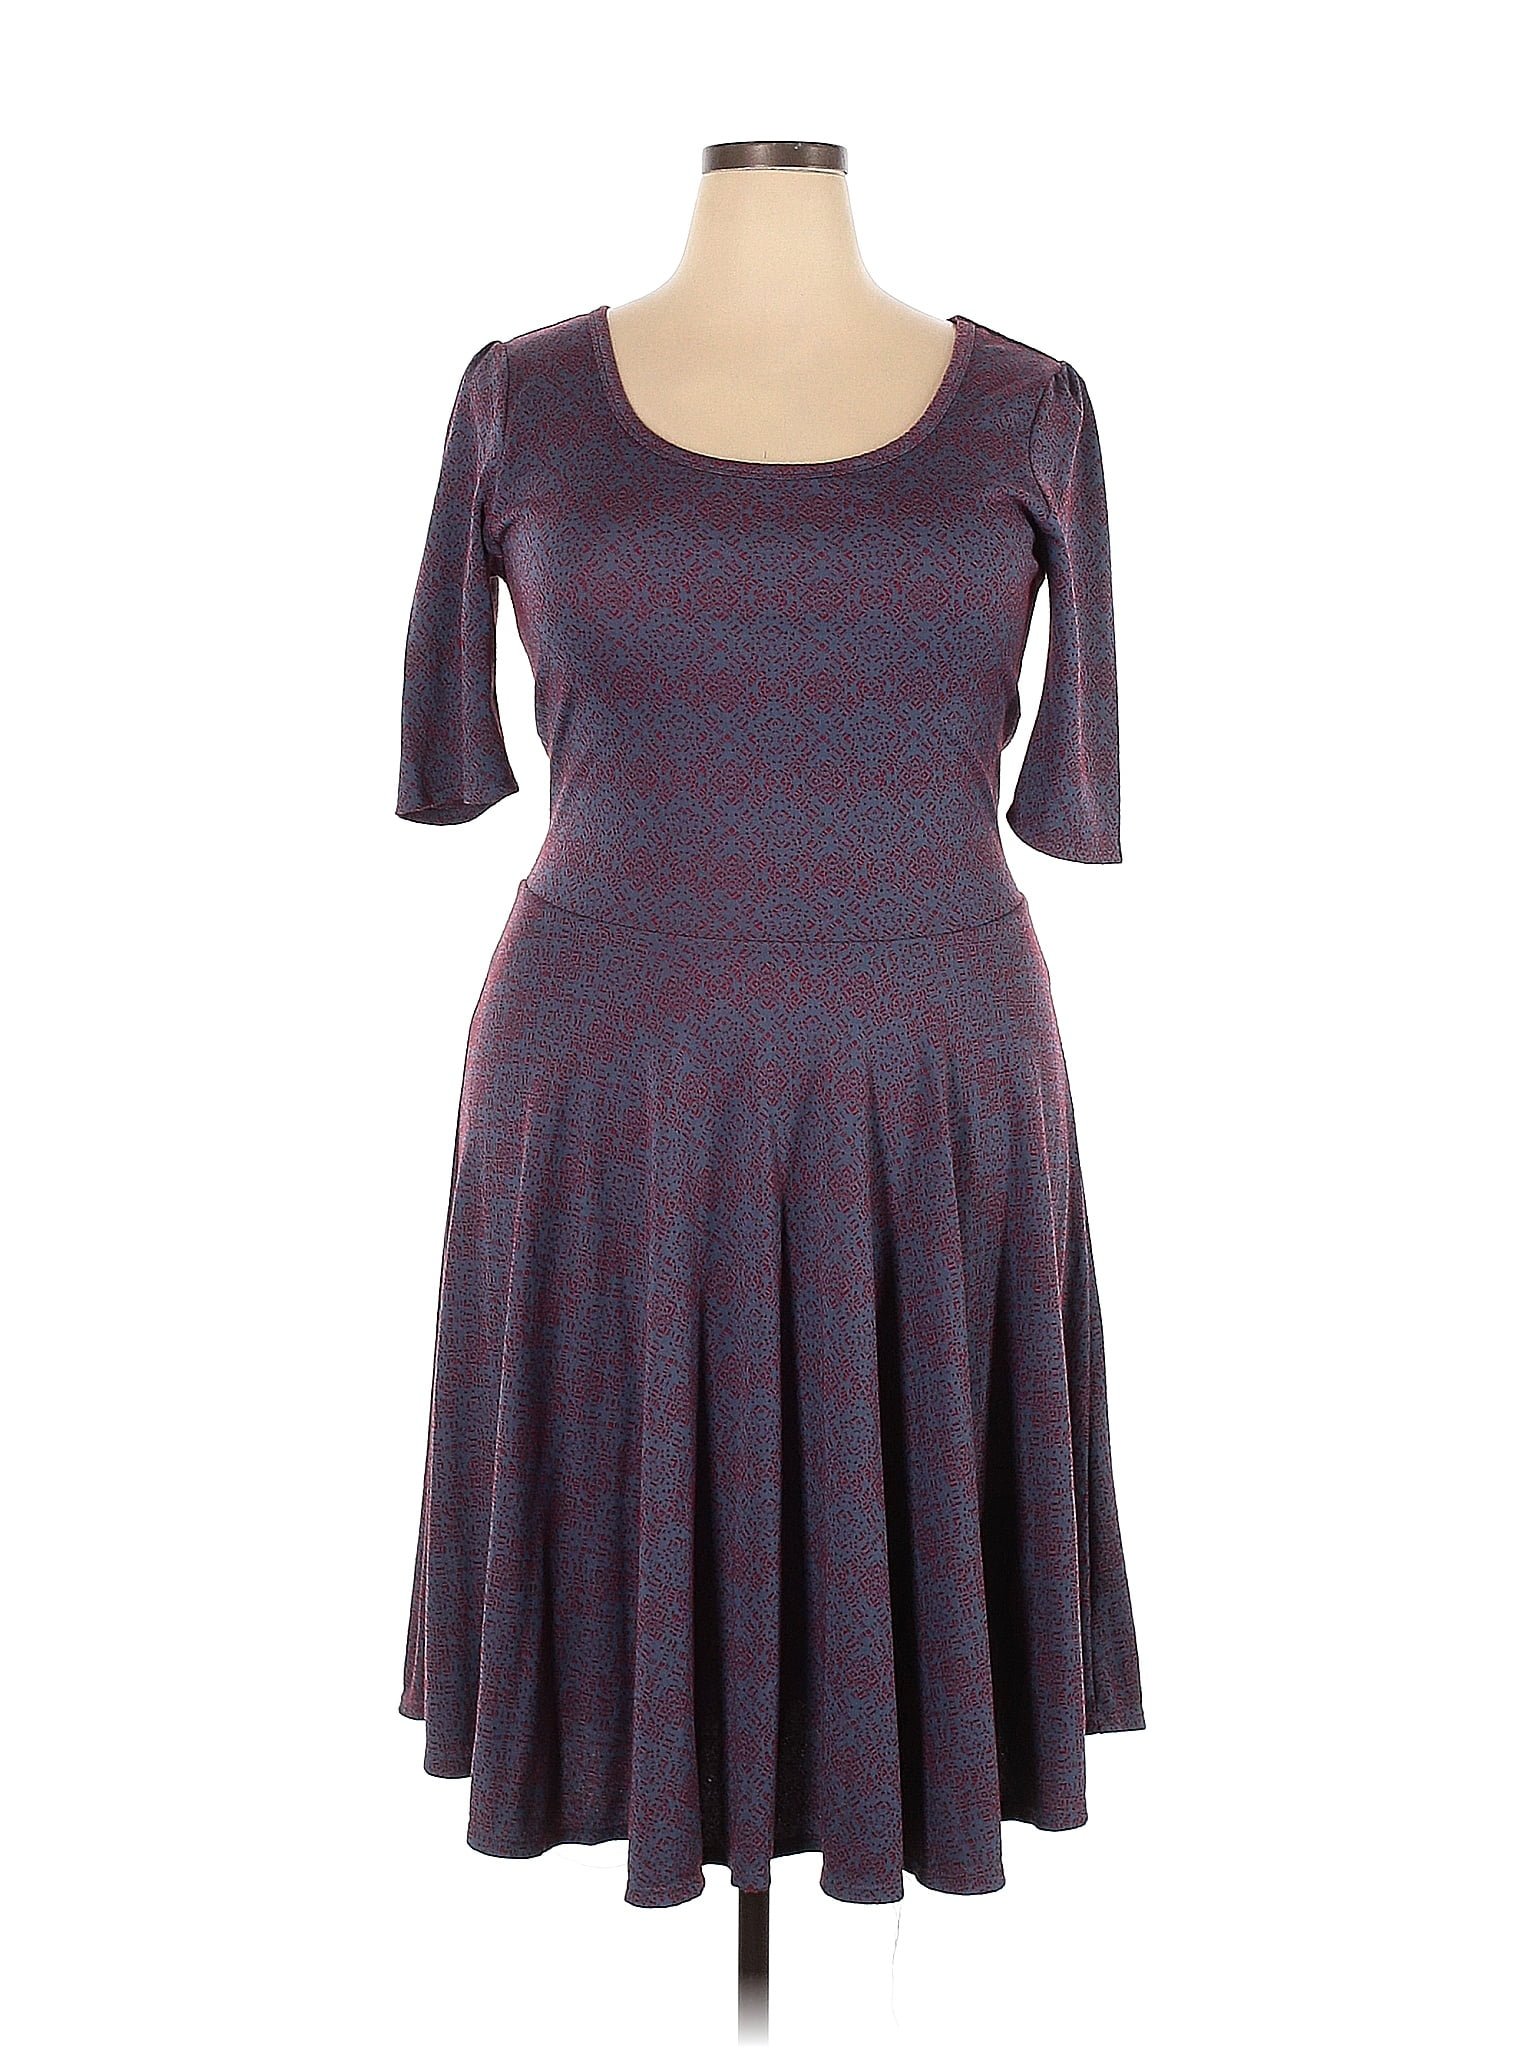 Lularoe Multi Color Purple Casual Dress Size 3X (Plus) - 47% off | thredUP